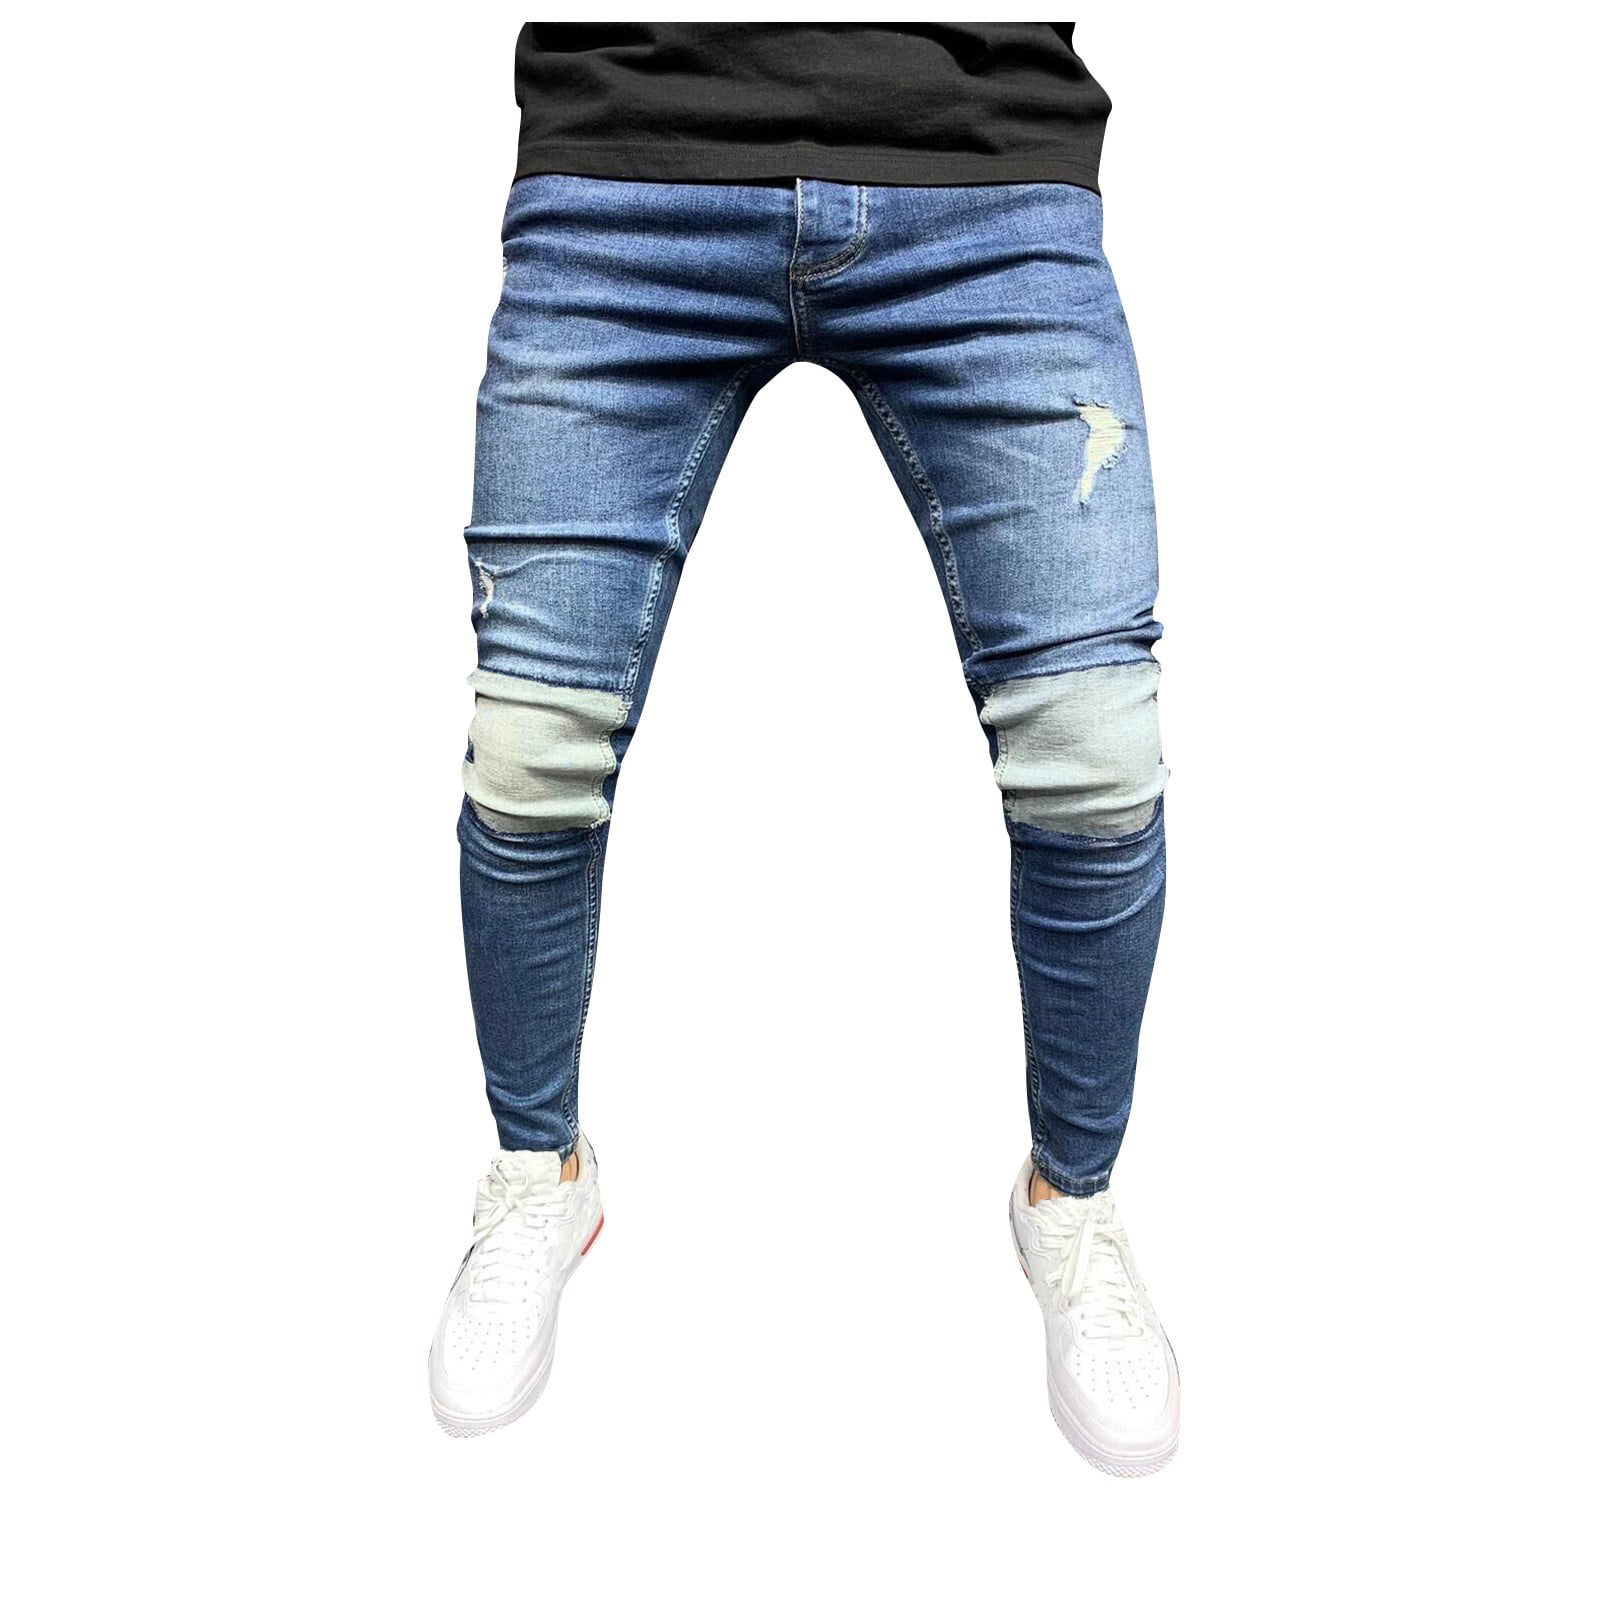 modnes Snavset Oprigtighed Fashion Men Pants Baggy Jeans For Men Y2k Skinny Jeans Ripped Jeans -  Walmart.com